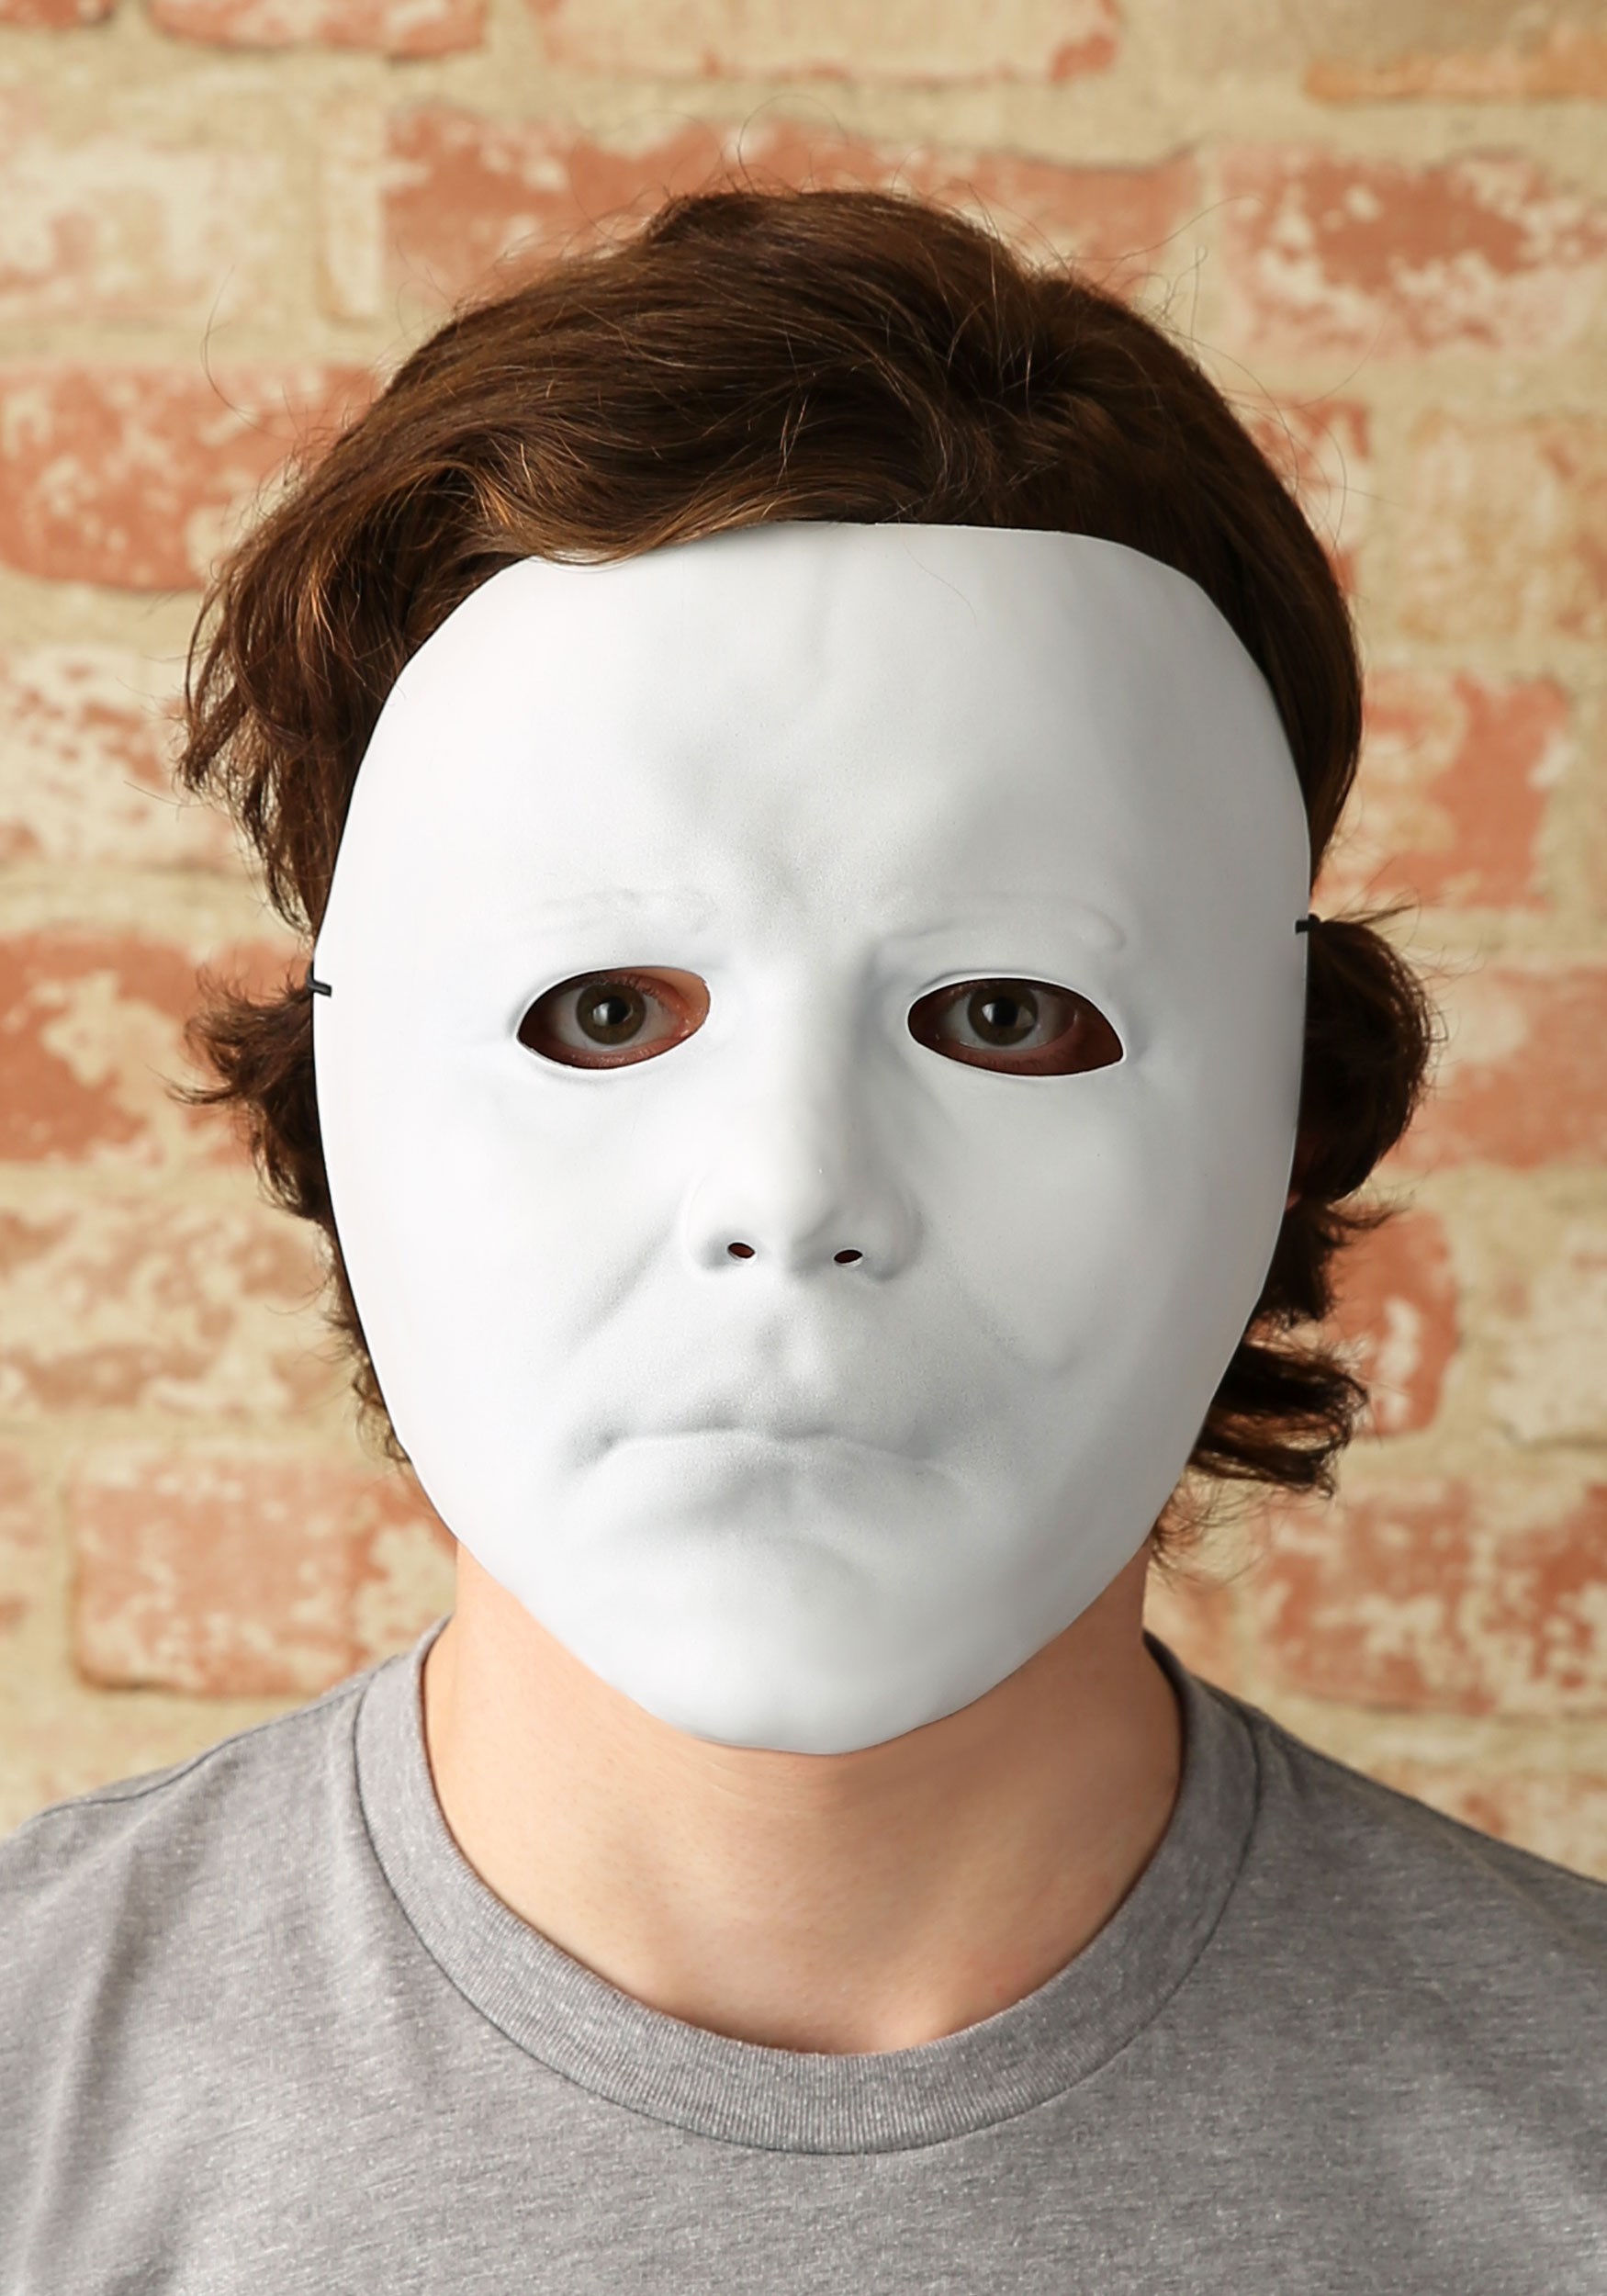 Самую простую маску. Майк Майерс Хэллоуин маска.